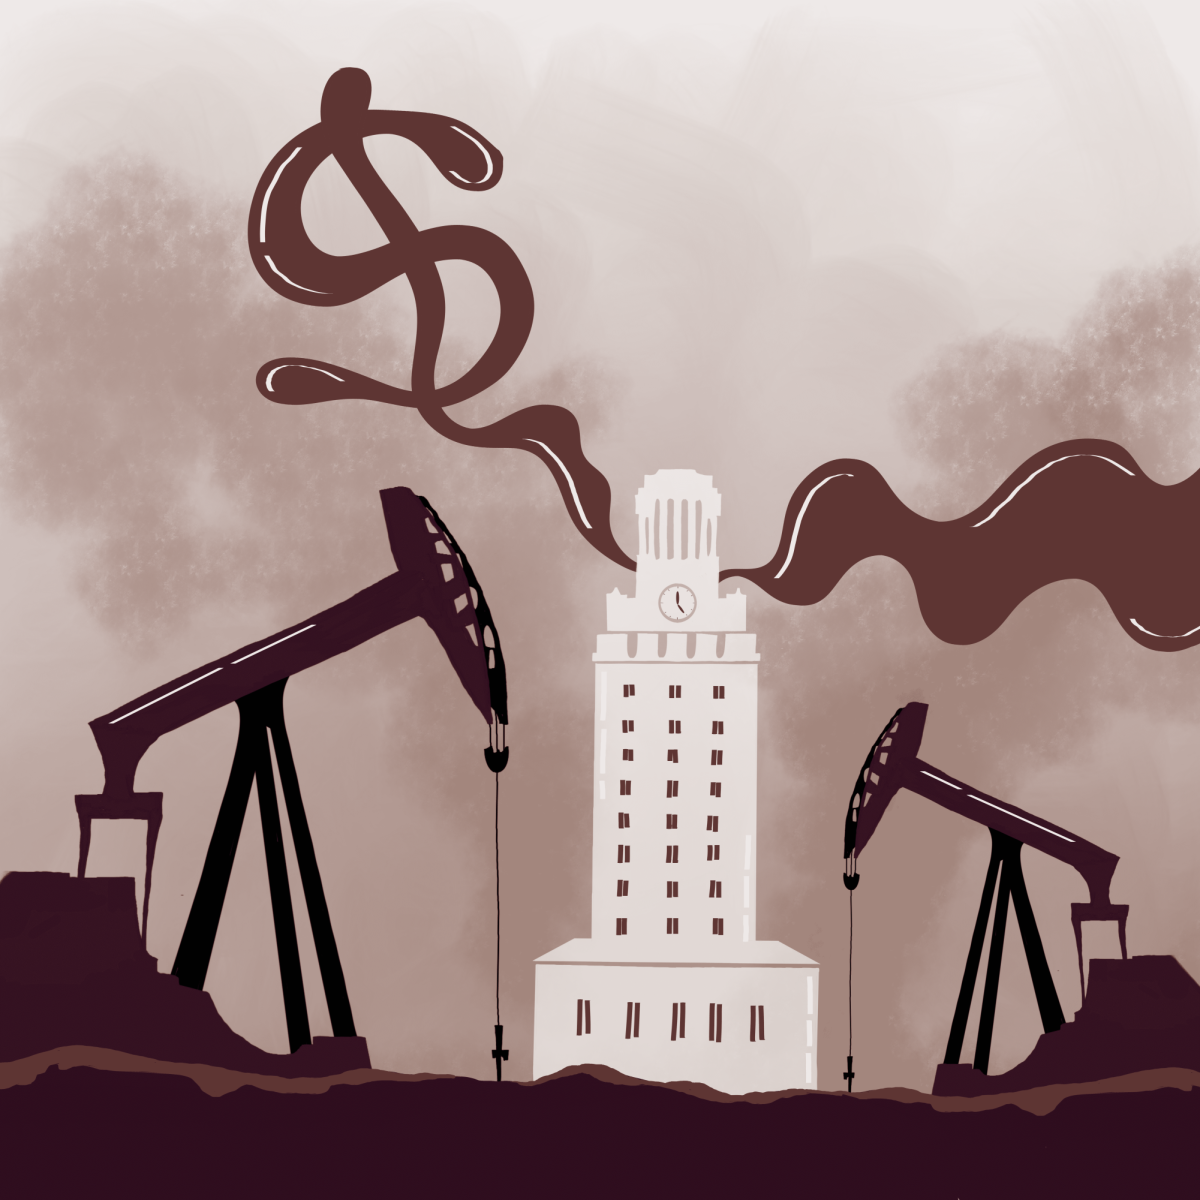 ‘La energía del futuro’: El discurso en torno a los yacimientos petrolíferos dotados por el estado, las inversiones